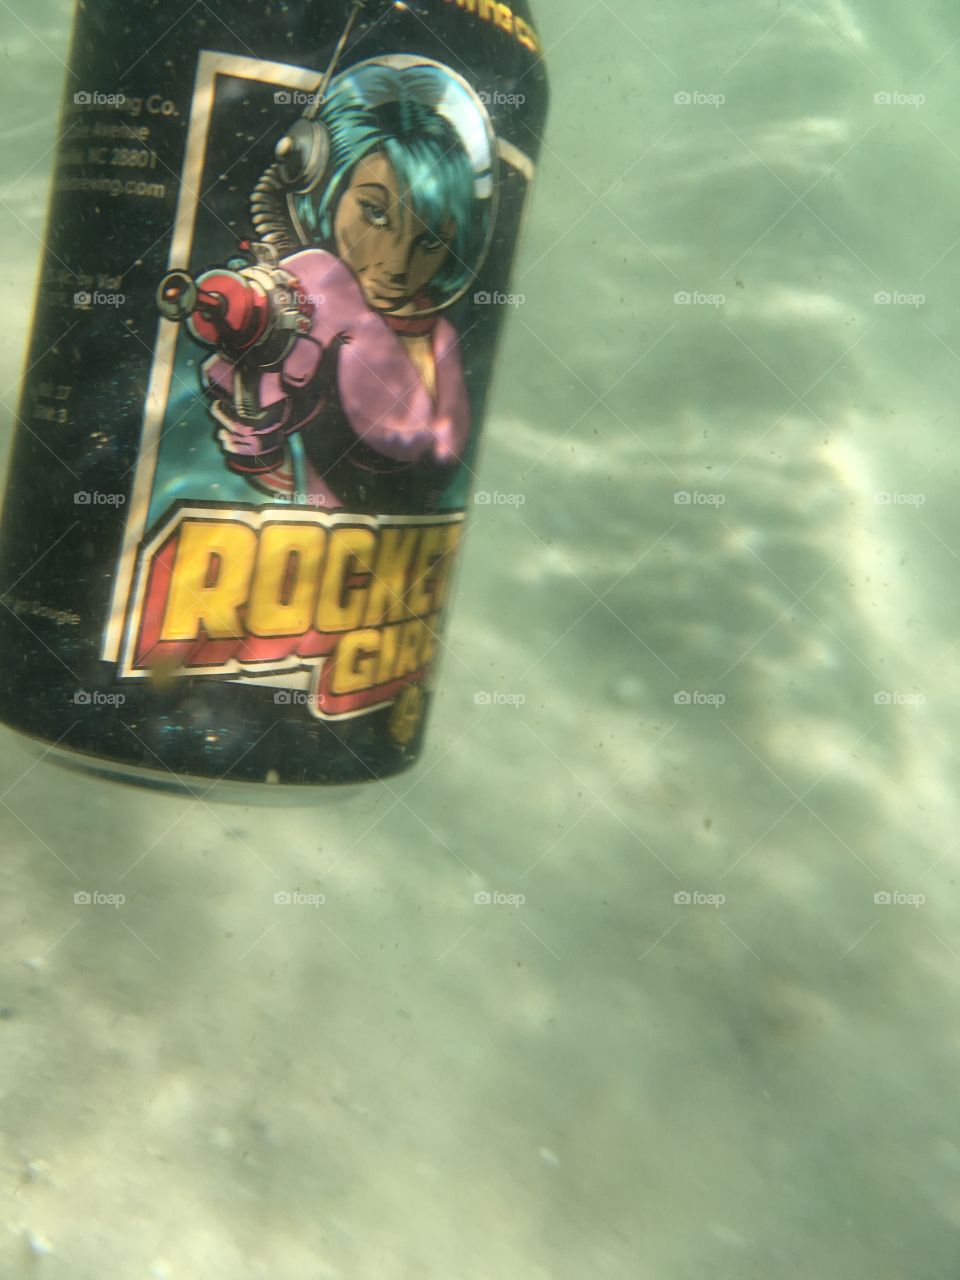 Aqua-Rocket Girl 